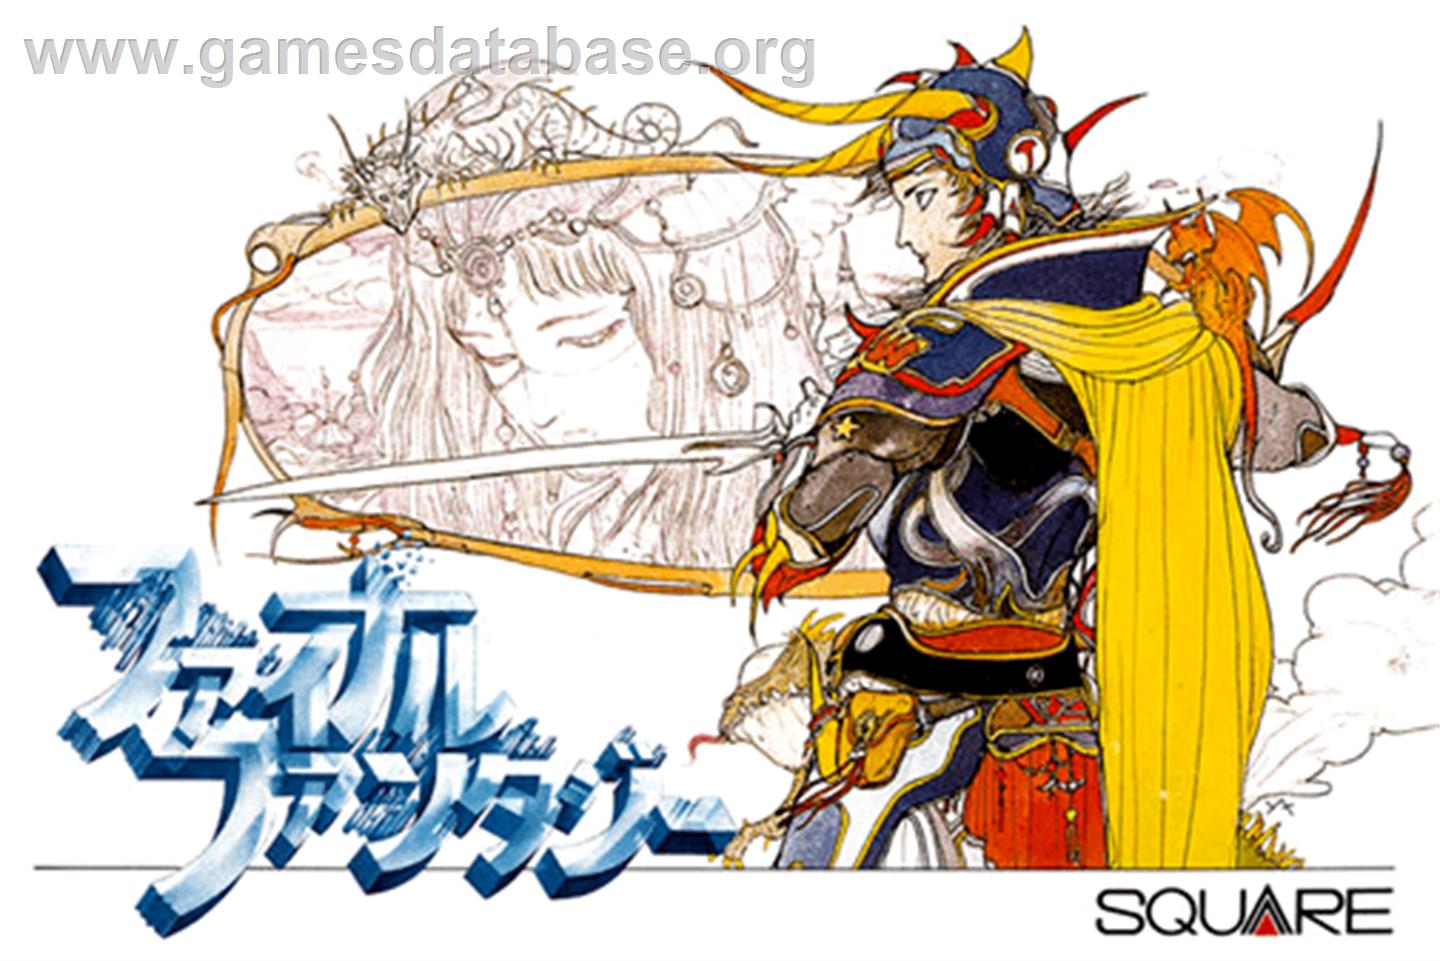 Final Fantasy - Nintendo NES - Artwork - Box